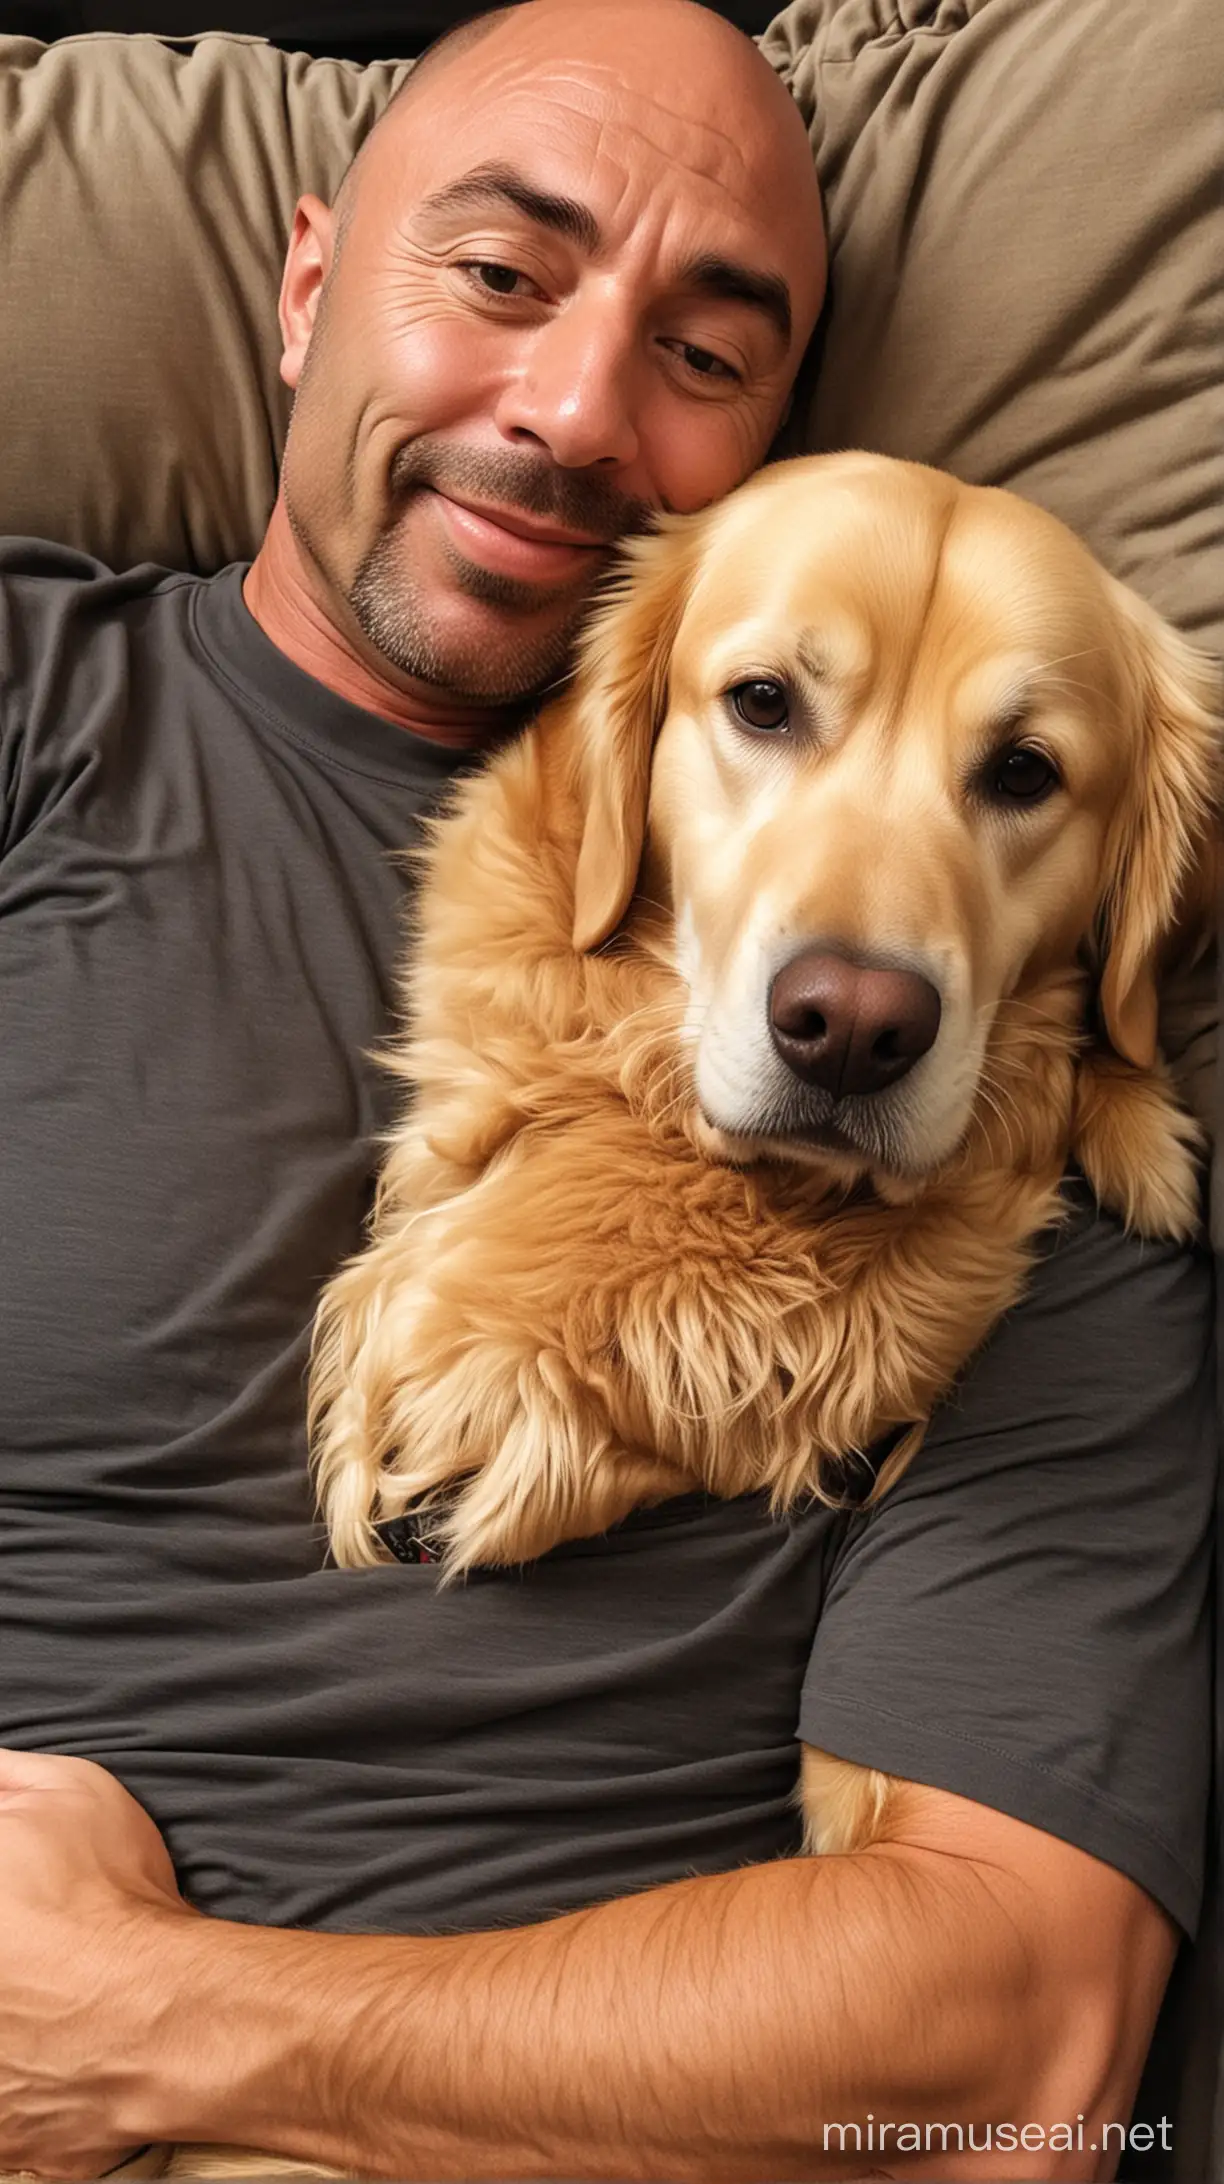 Joe Rogan Cuddling with His Adorable Golden Retriever